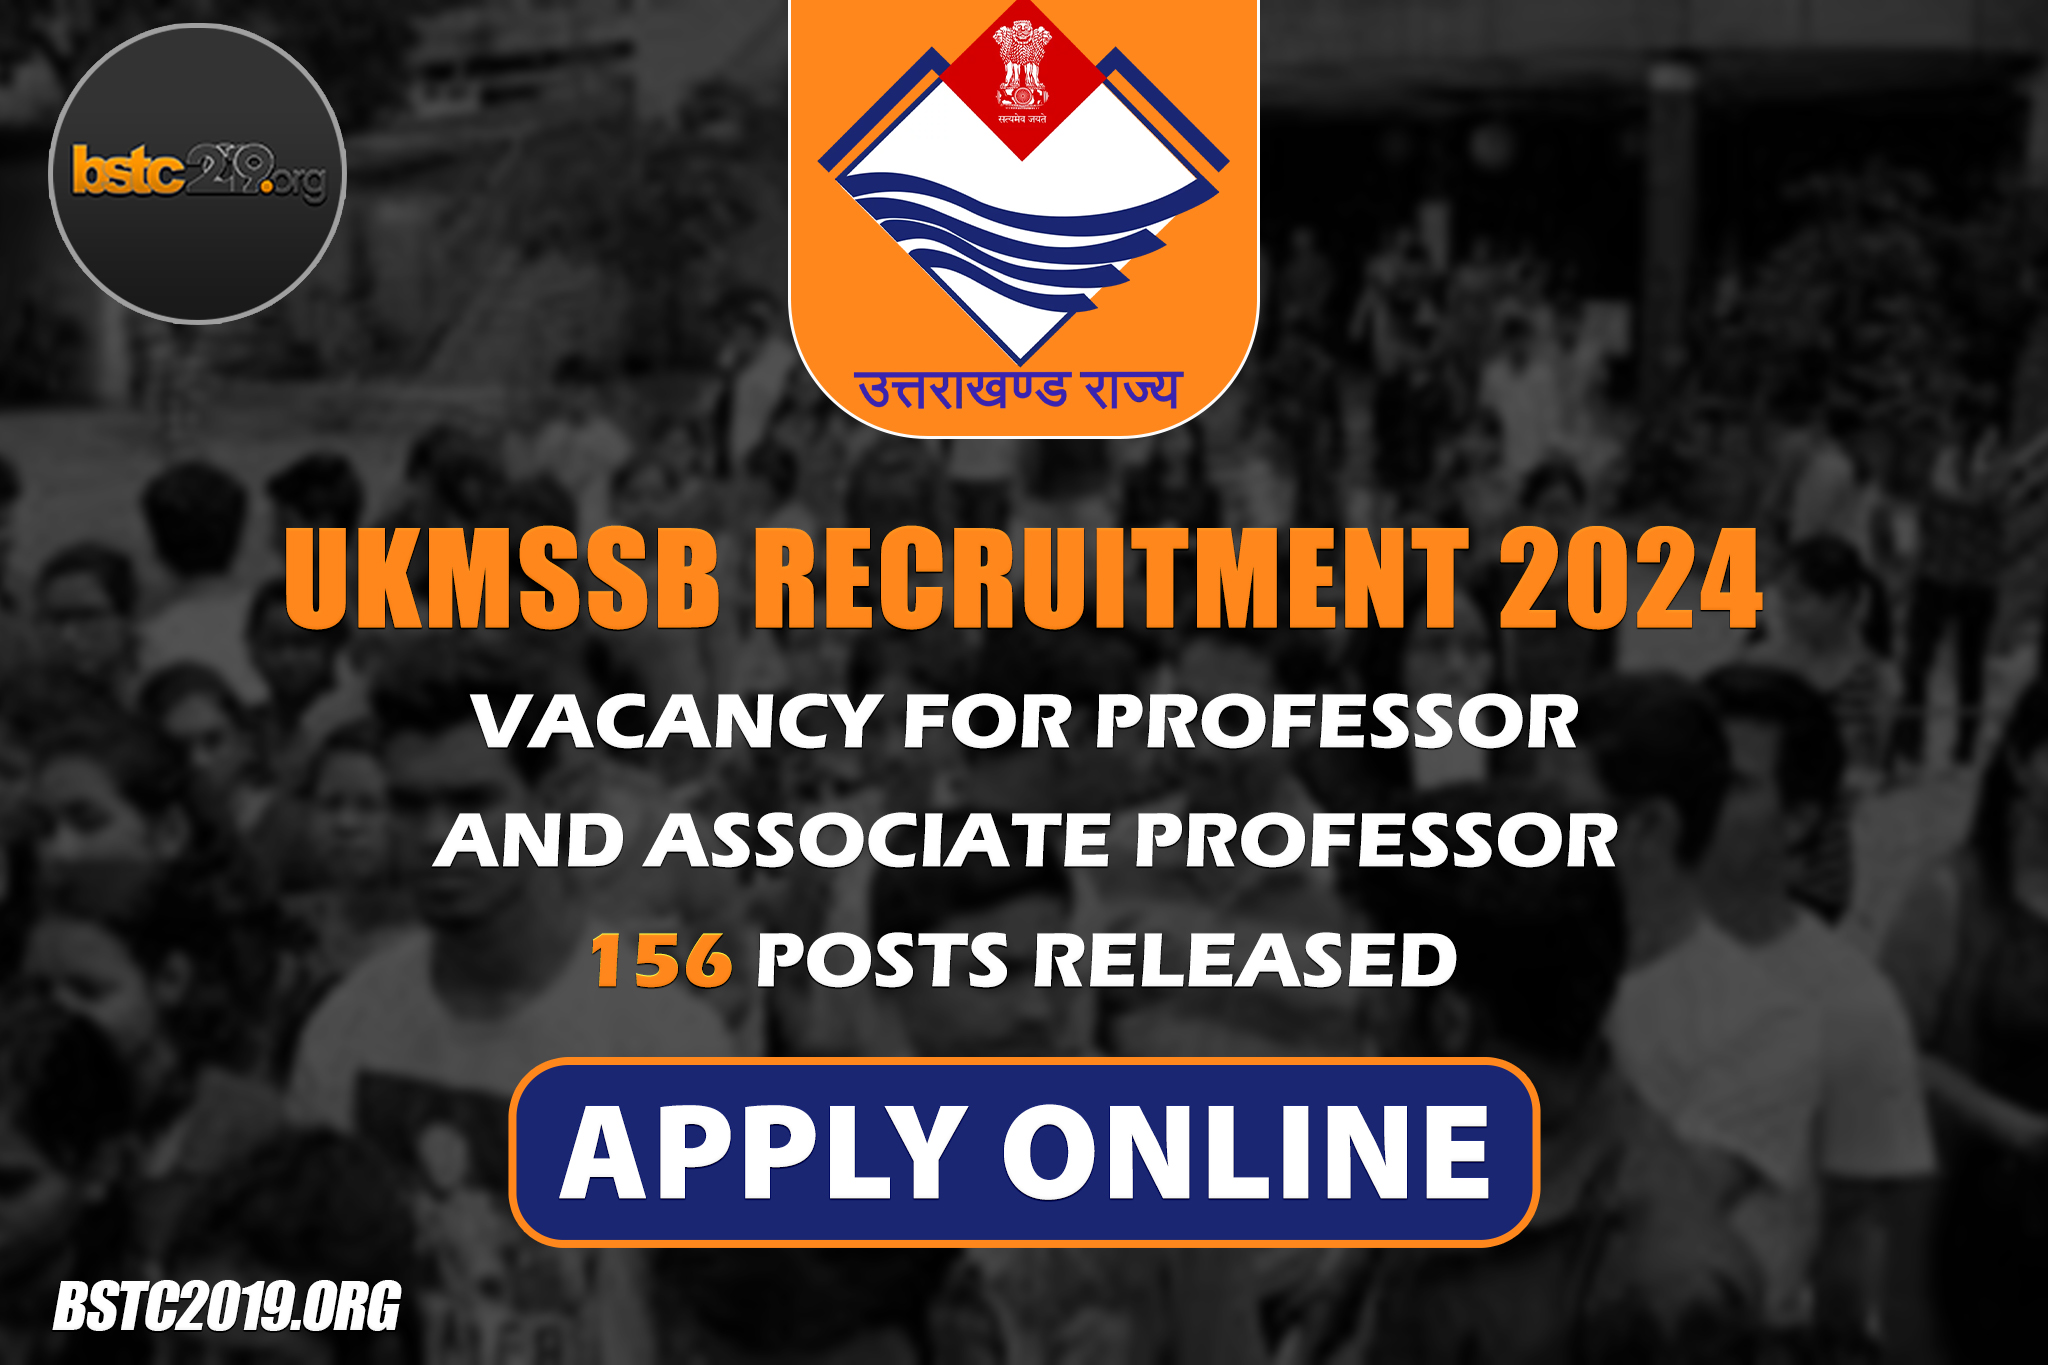 UKMSSB Recruitment 2024